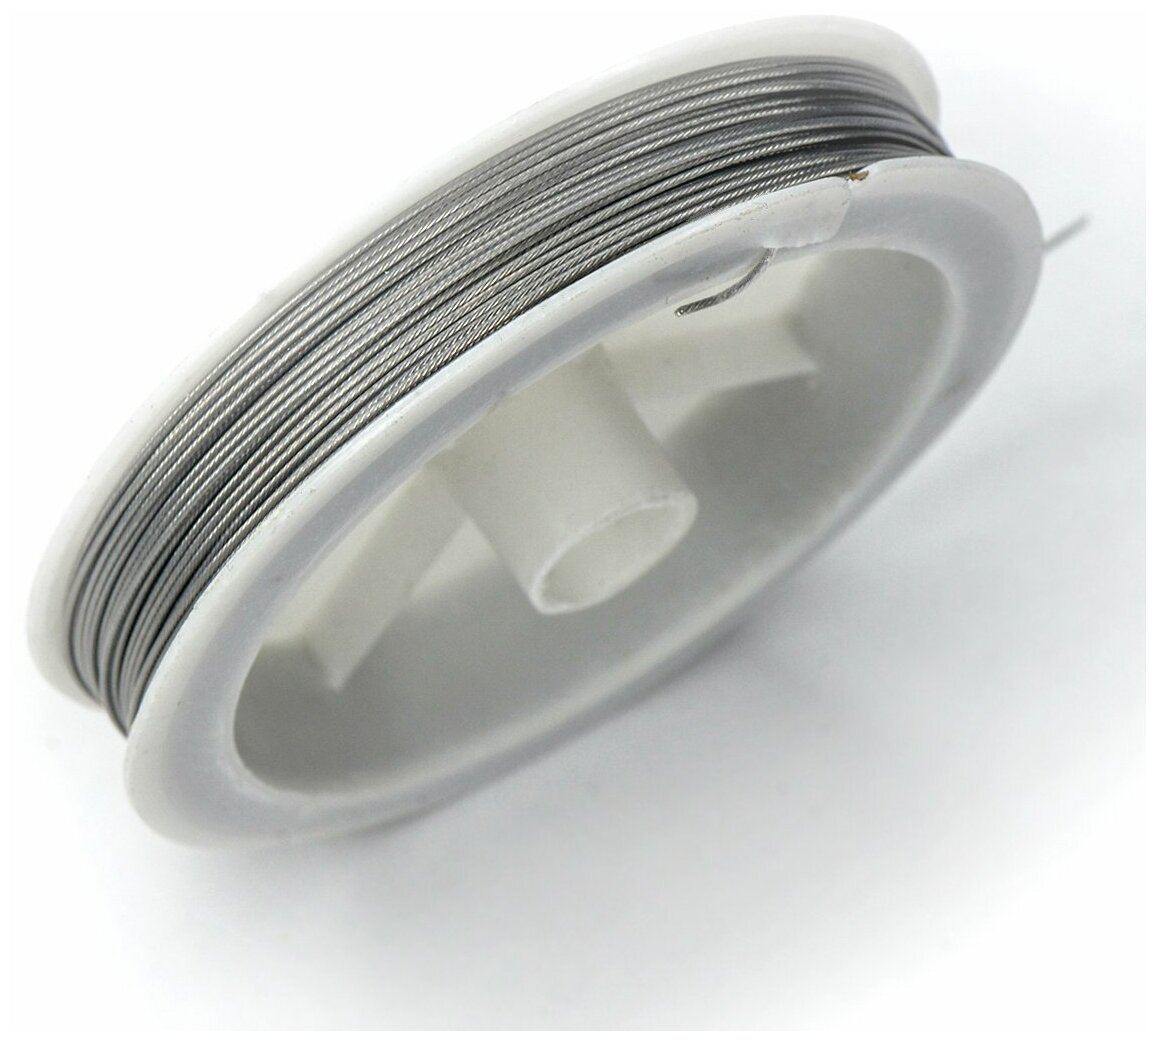 Ювелирный тросик (толщина 0,7 мм) ланка для бус/браслетов 1 бобина по 25 м, цвет серебристый